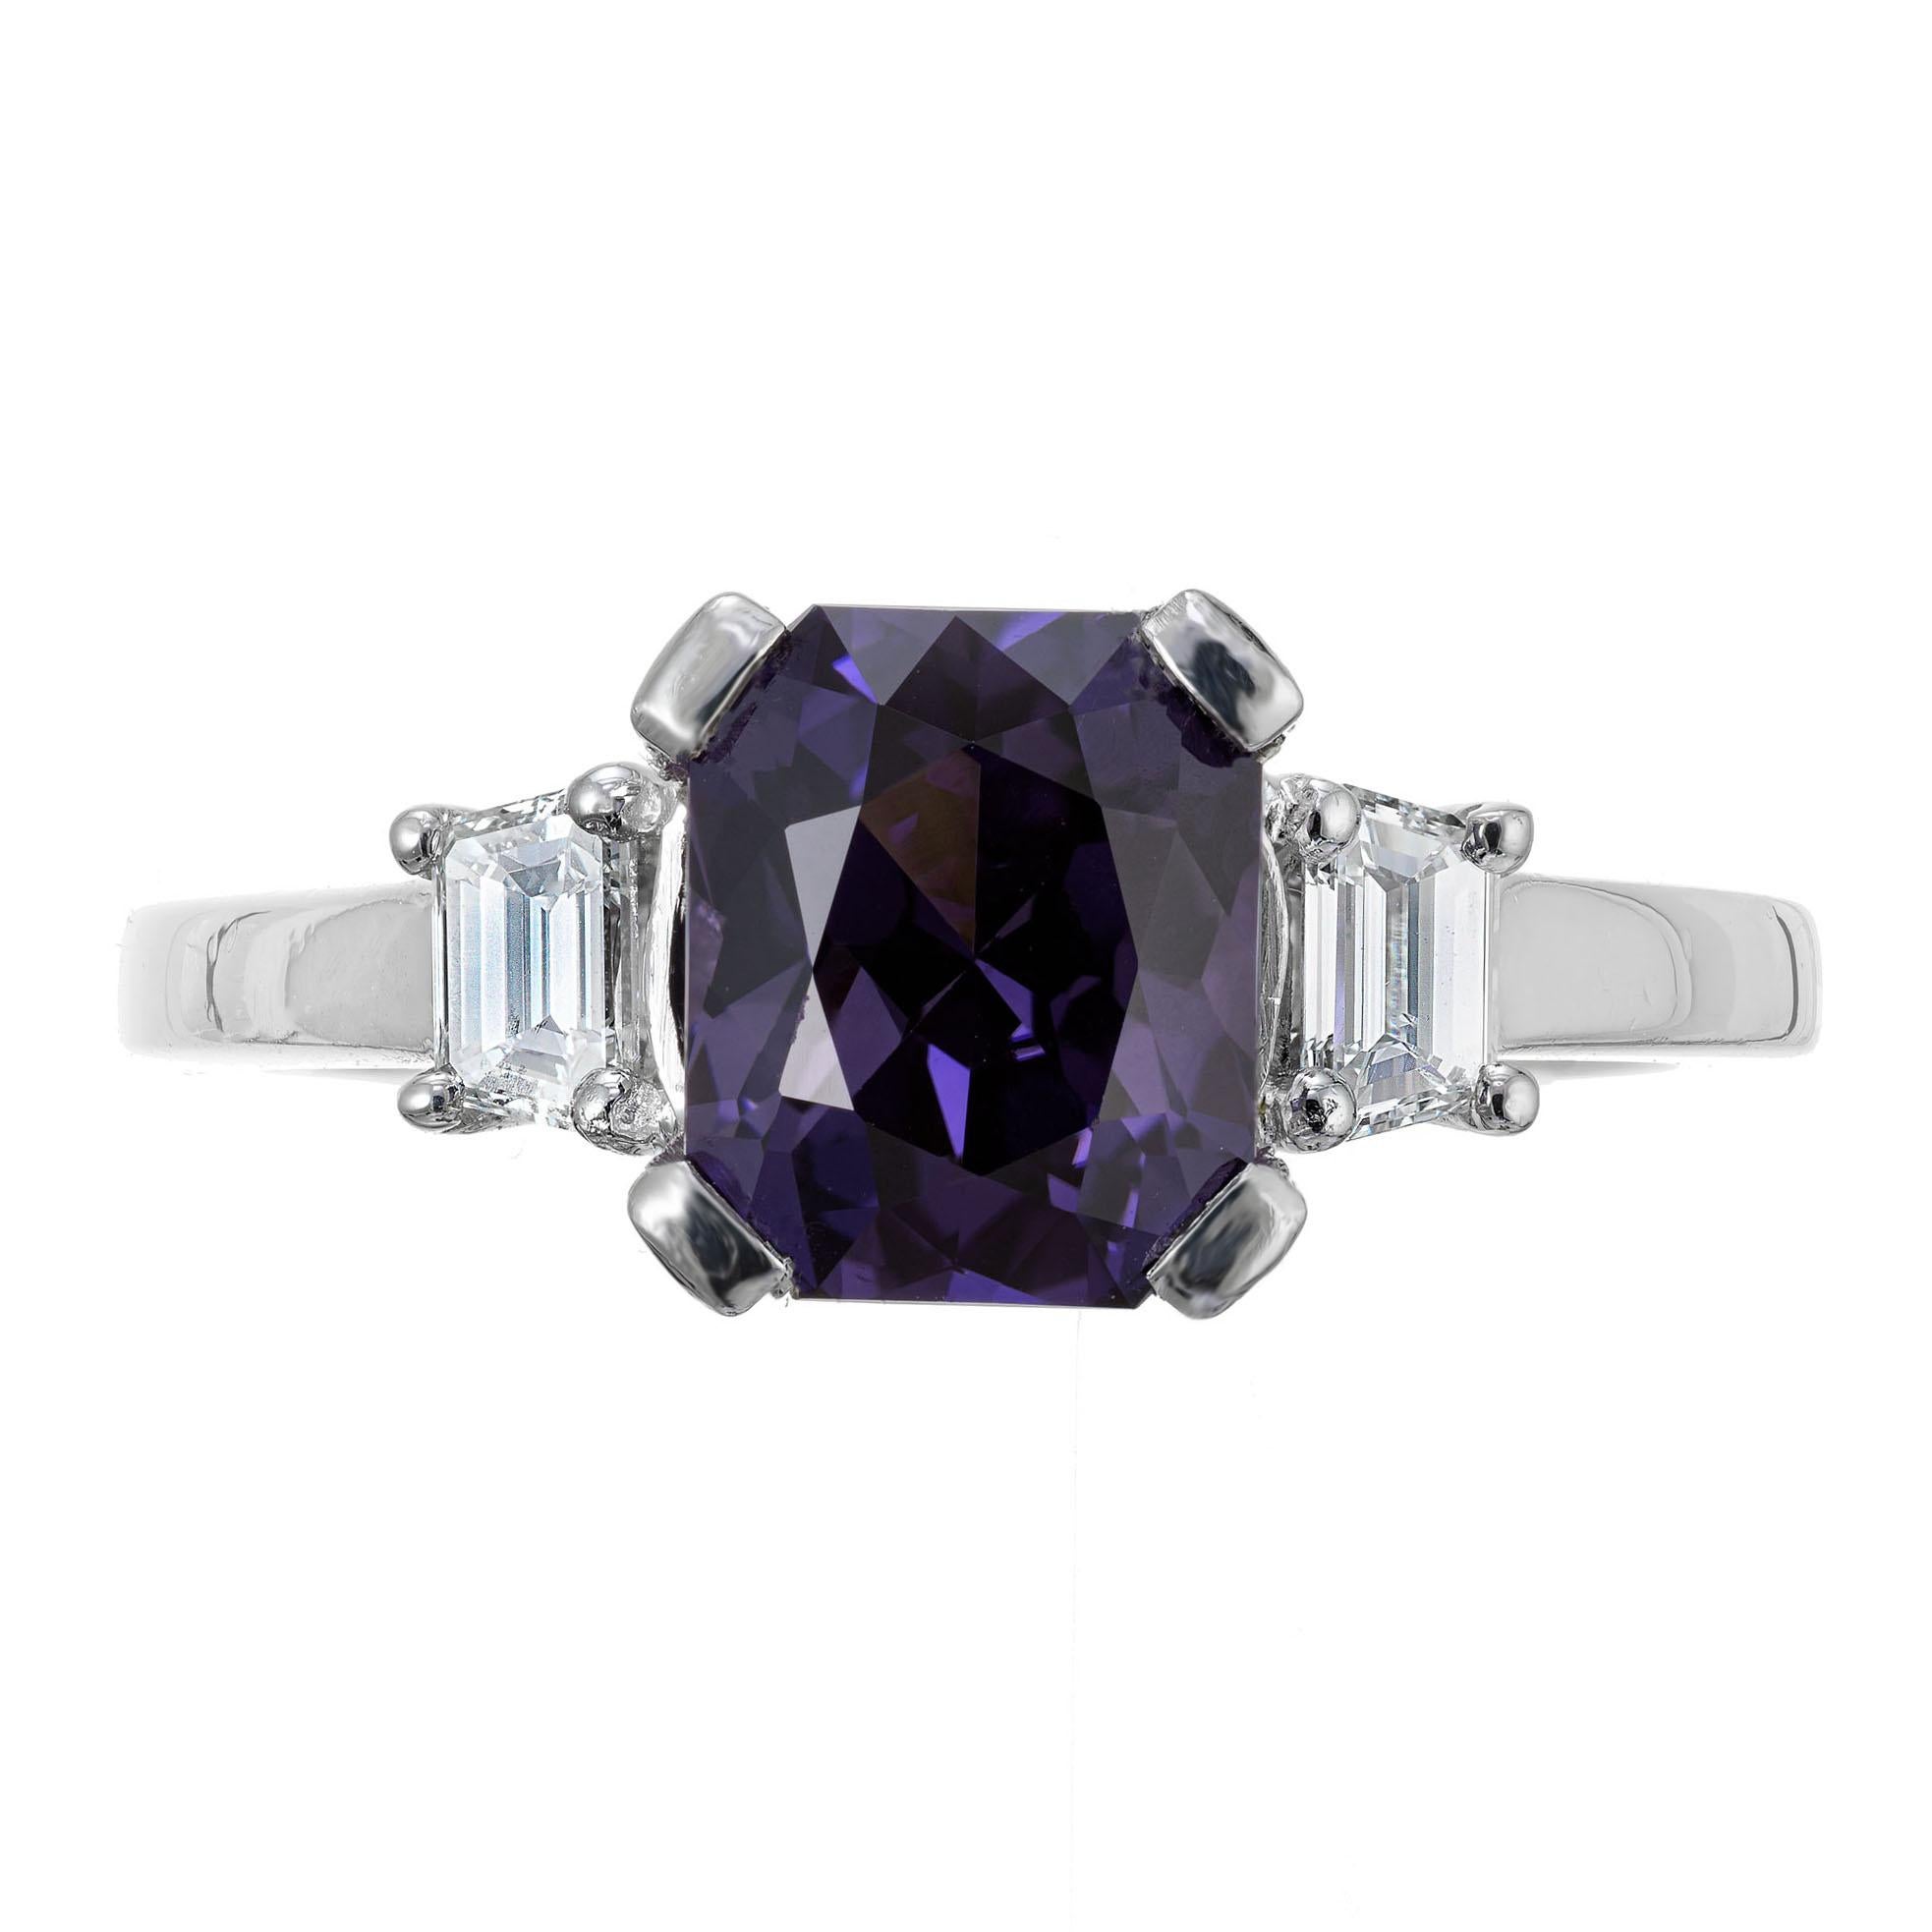 Bague de fiançailles Natalie K en saphir et diamant. Saphir central naturel non traité, certifié par le GIA, d'un violet profond et riche de 3,33 cts, dans une monture en platine avec 2 diamants latéraux trapézoïdaux et 22 diamants ronds pleine